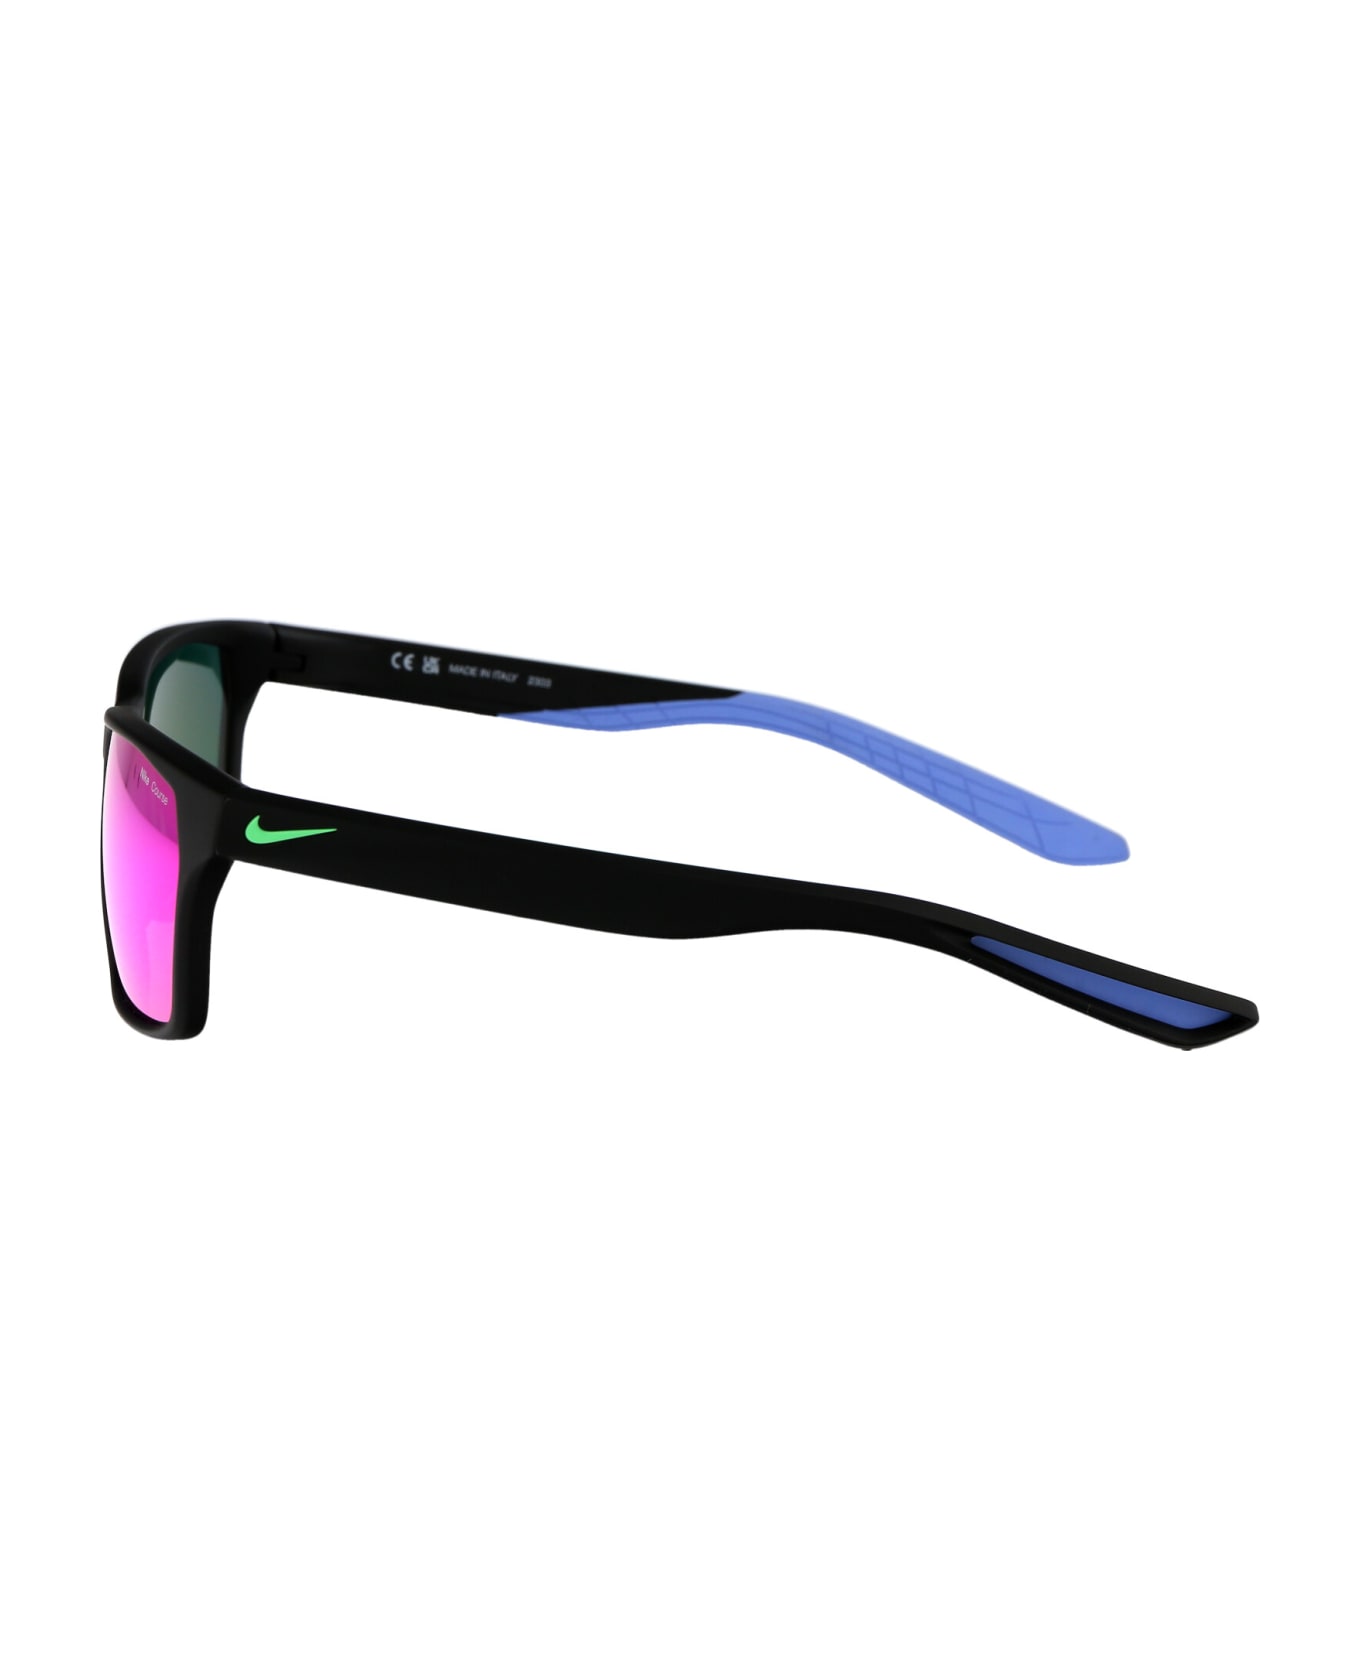 Nike Maverick Rge M Sunglasses - 010 BLACK/ELECTRO GREEN NOIR/VERT